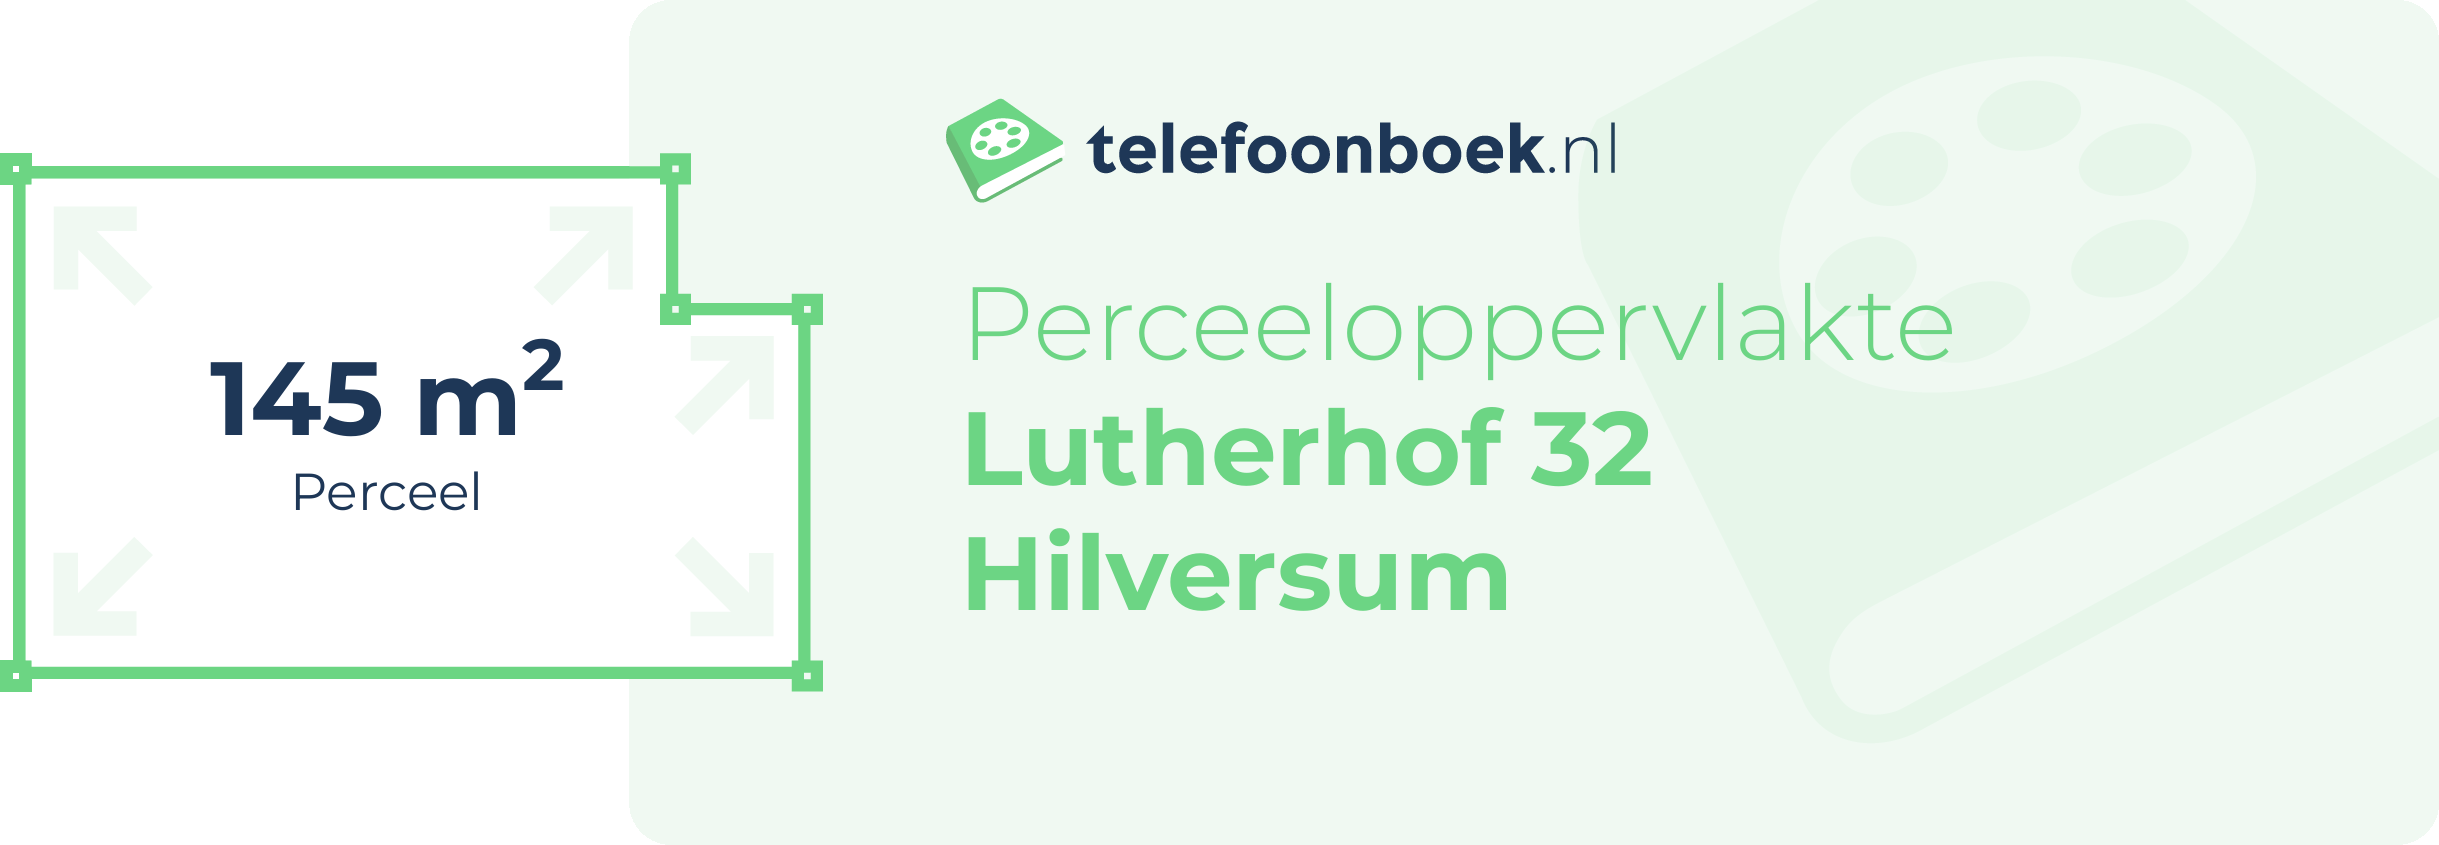 Perceeloppervlakte Lutherhof 32 Hilversum